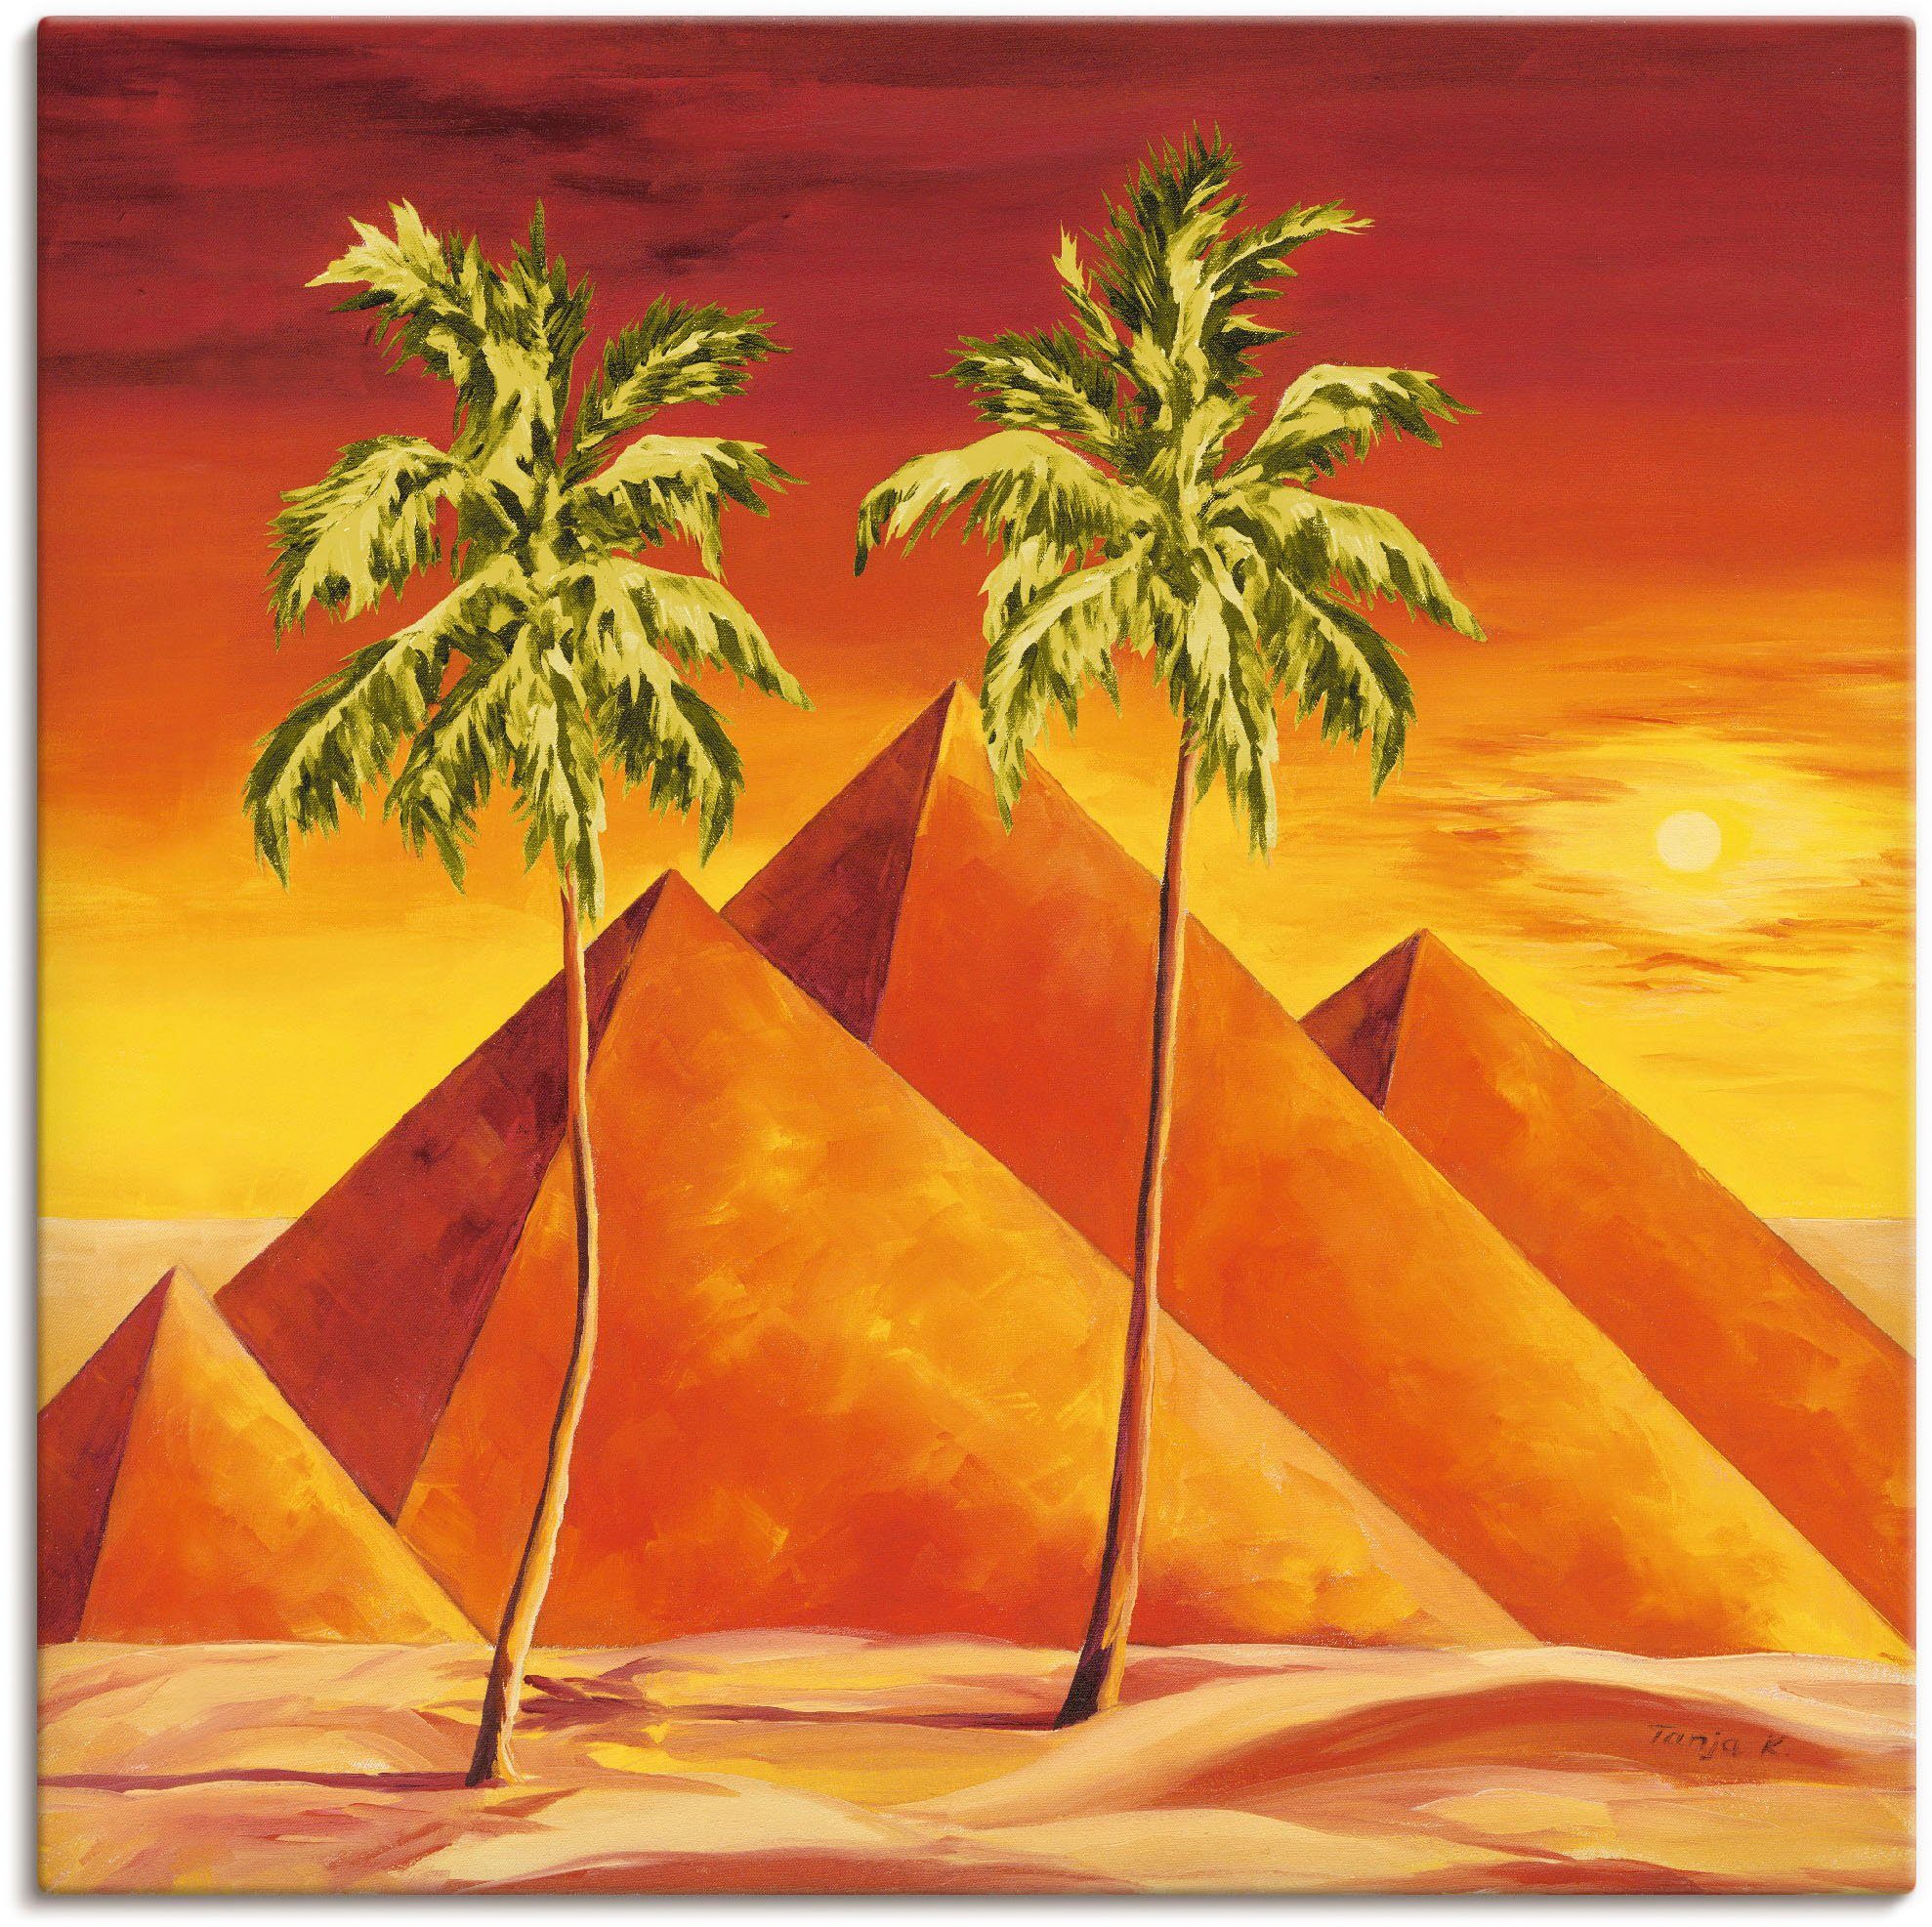 Artland Artprint Piramiden met palmen in vele afmetingen & productsoorten - artprint van aluminium / artprint voor buiten, artprint op linnen, poster, muursticker / wandfolie ook g